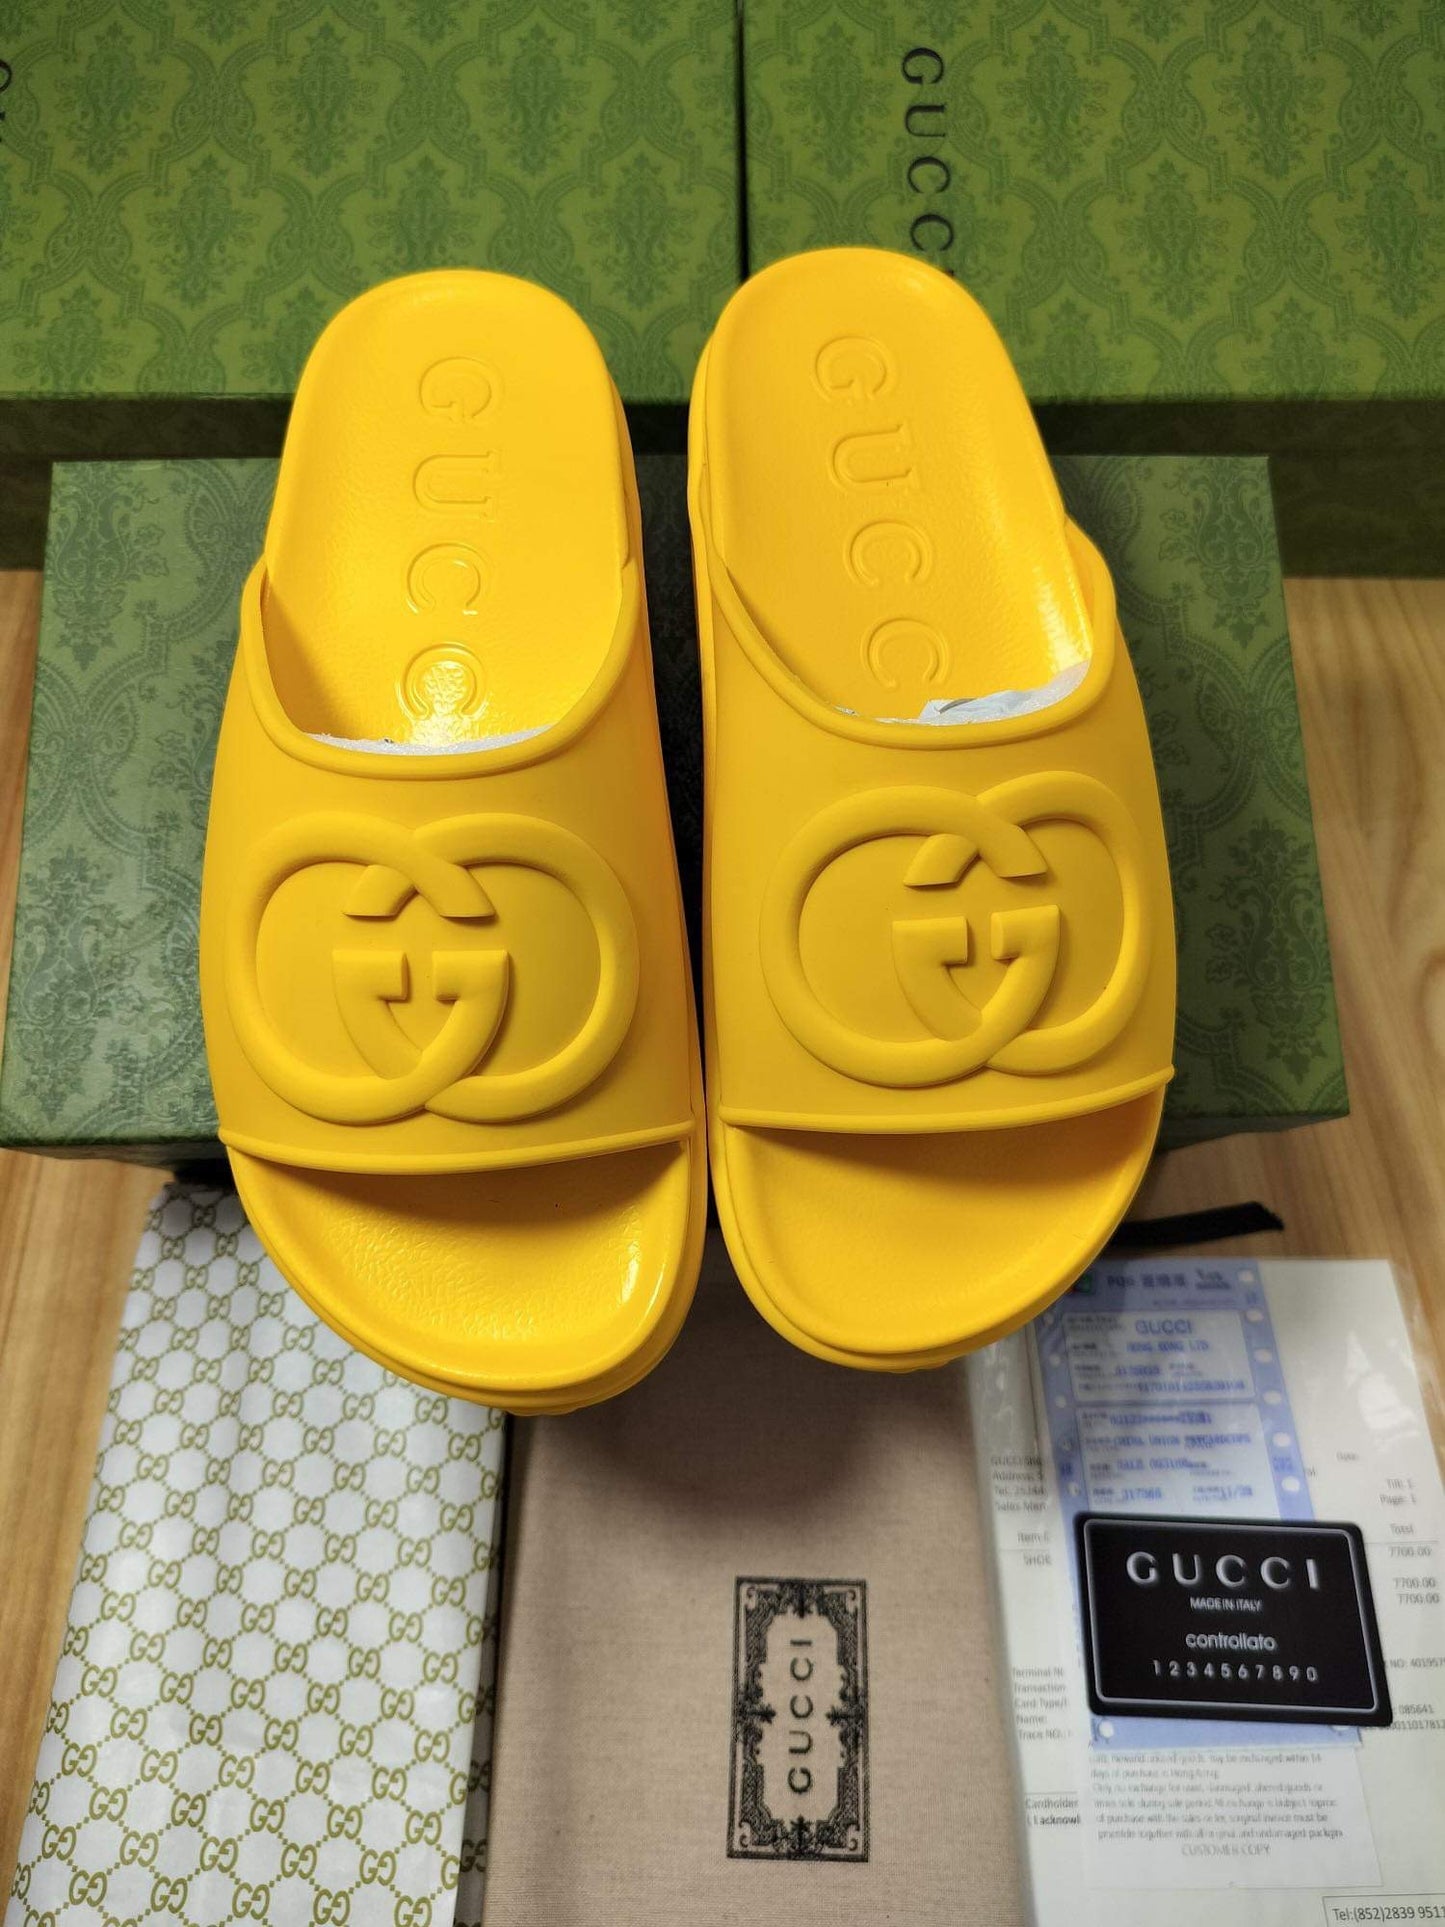 G crocs sandals